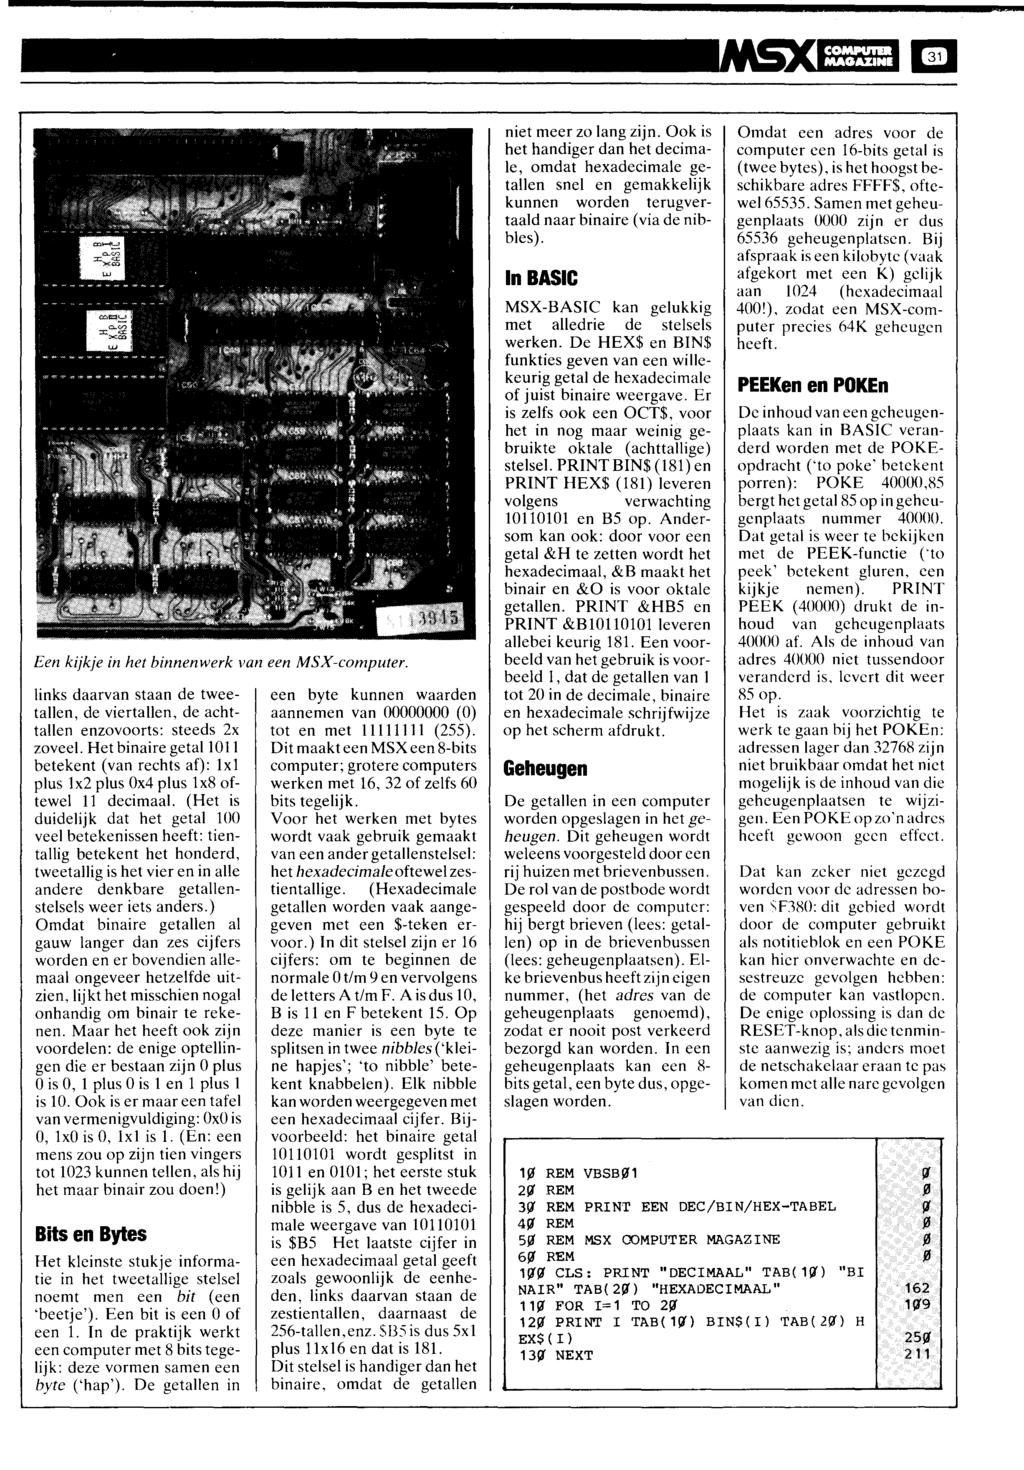 la, COMIIUIR MAGAZINE Een kijkje in het binnenwerk van een MSX-computer. links daarvan staan de tweetallen, de viertallen, de achttallen enzovoorts: steeds 2x zoveel.